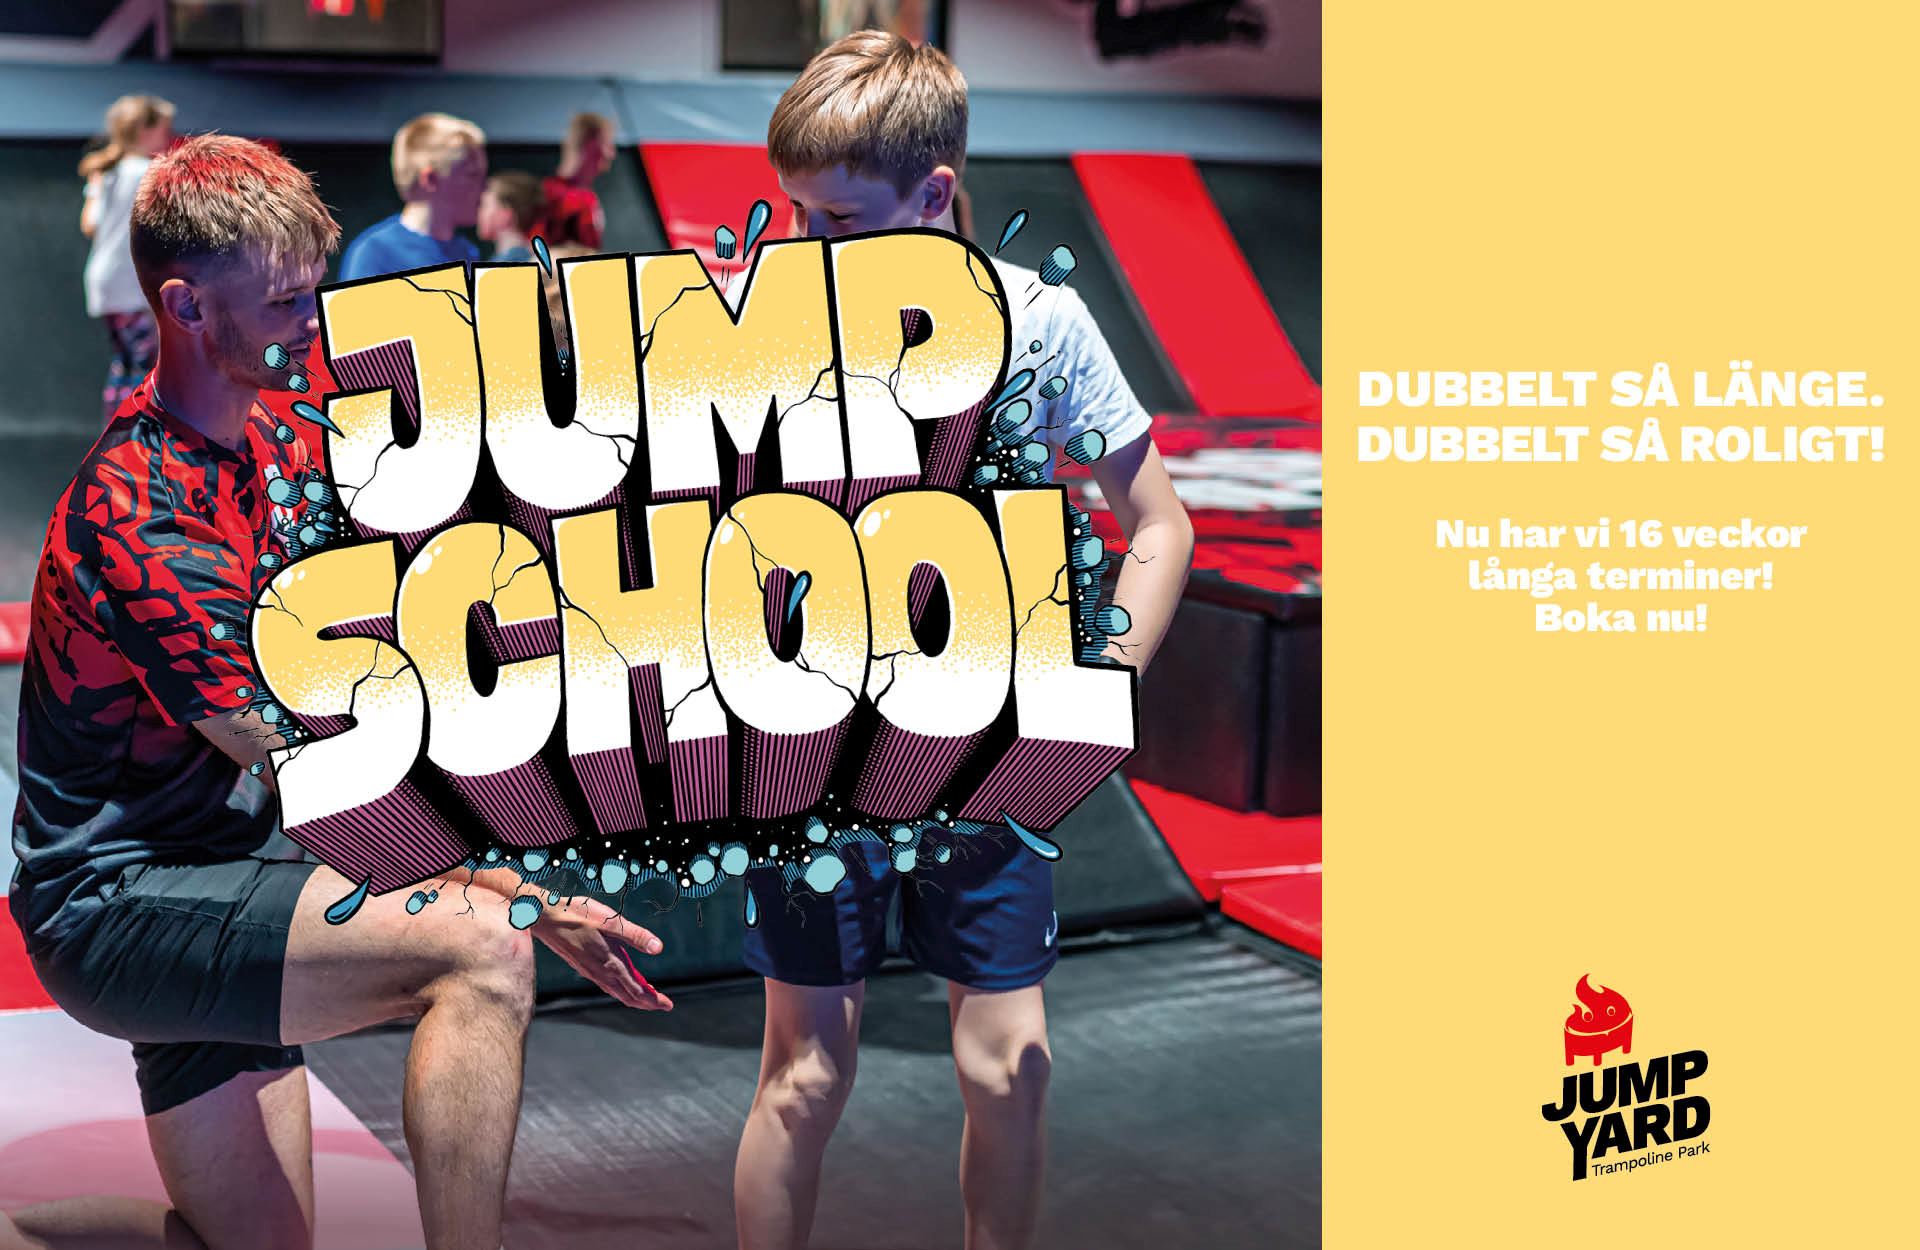 16 veckors barnaktiviteter skövde JumpSchool JumpYard